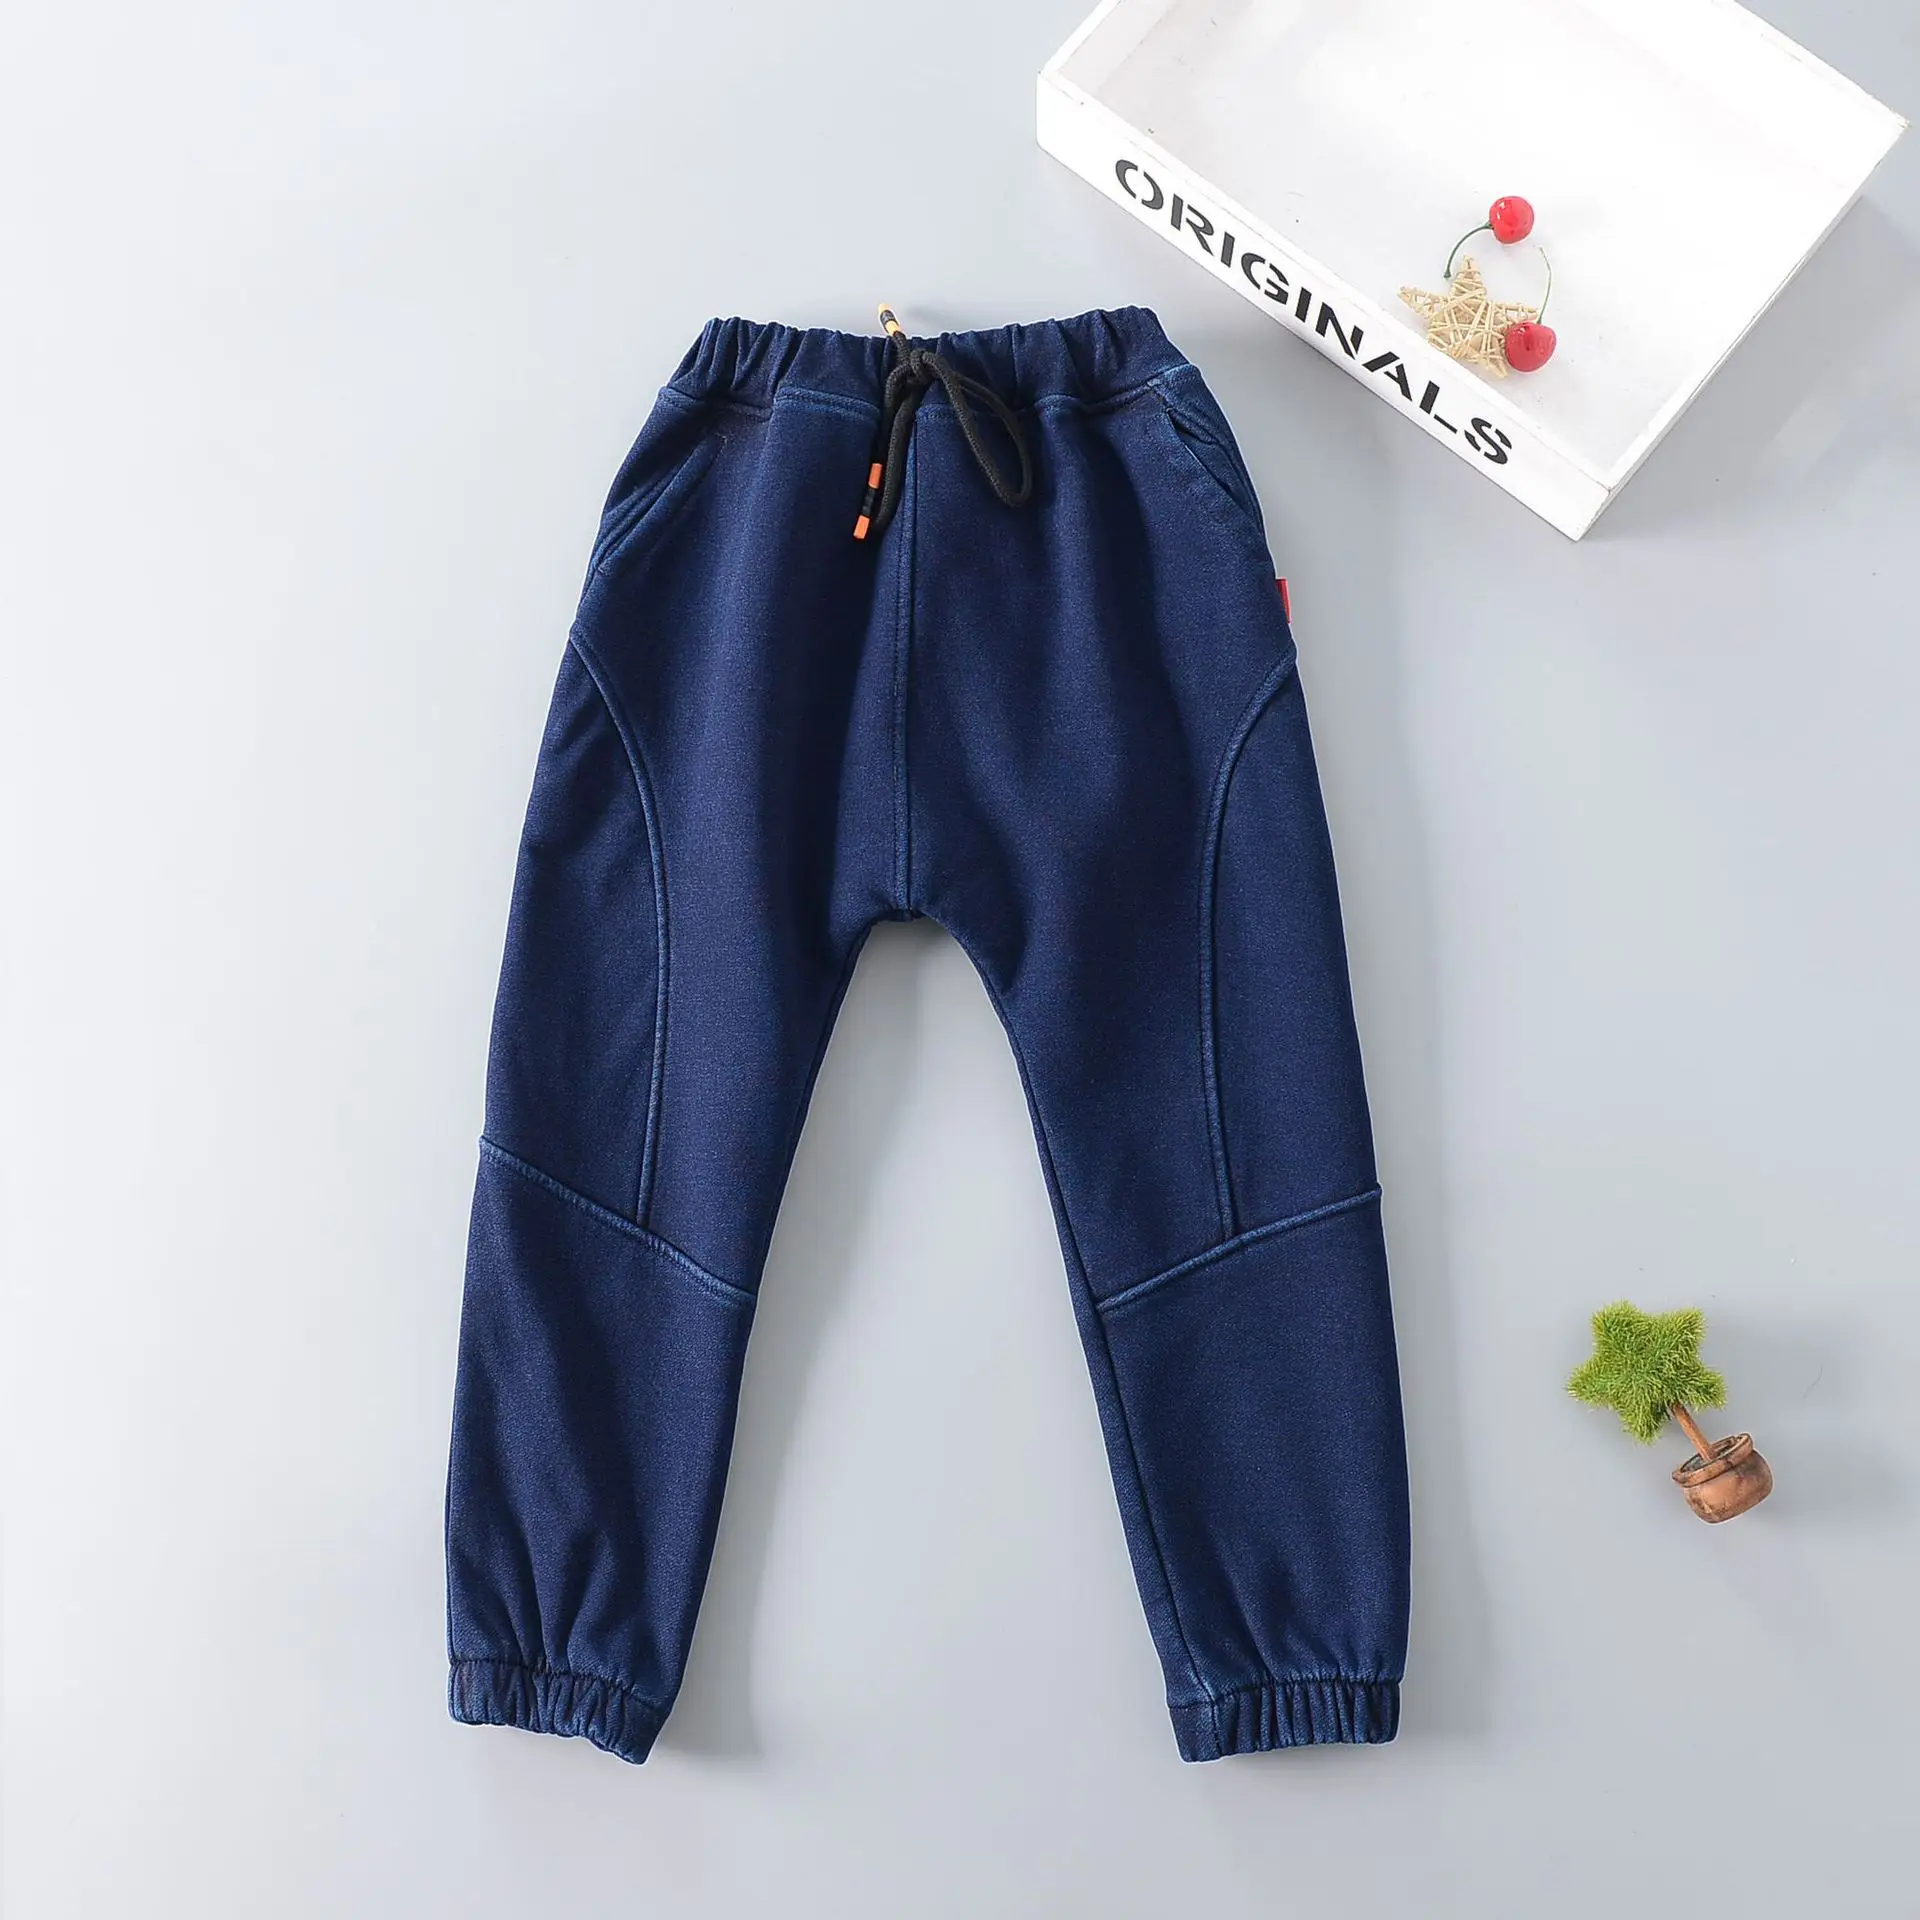 Детская одежда; коллекция года; зимние джинсы в Корейском стиле; брюки для мальчиков и девочек; повседневная одежда в ковбойском стиле; плотные вельветовые джинсы